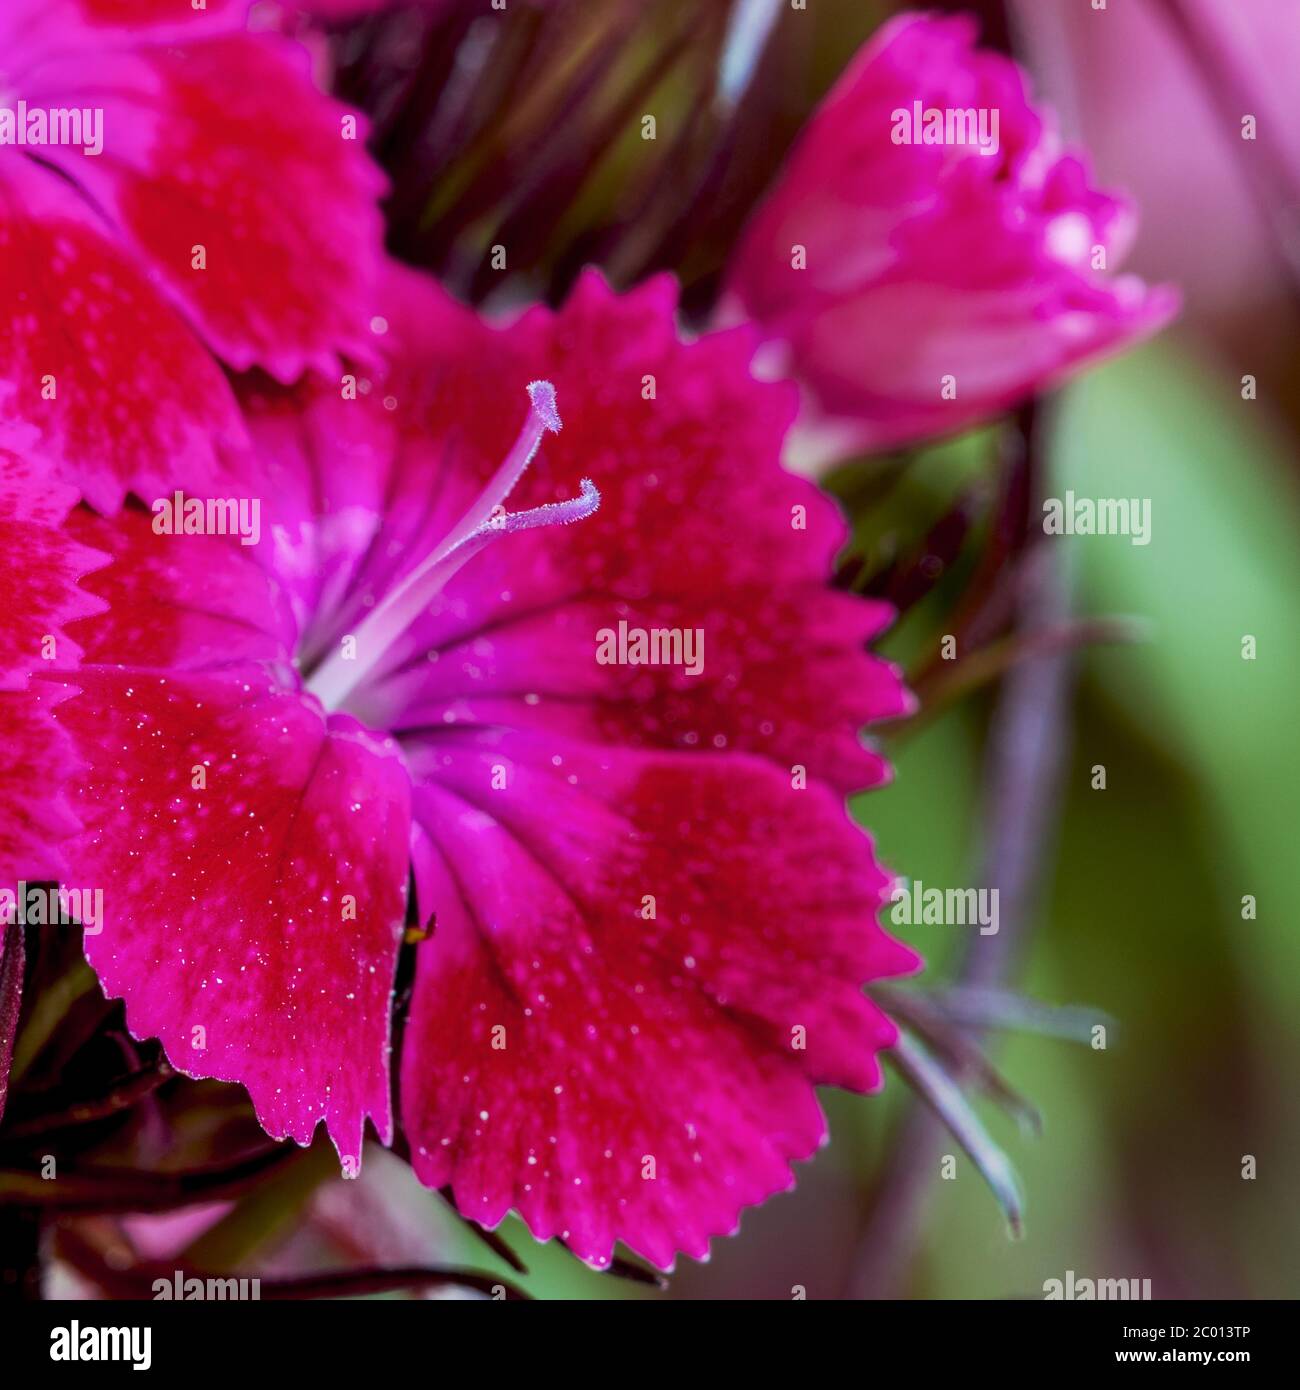 Lila Farbe der türkischen Nelke Blume, Makro. Bärtige Nelke oder Türkische  Nelke (Dianthus barbatus) ist eine mehrjährige Pflanze aus der  Nelkenfamilie, aber ich Stockfotografie - Alamy